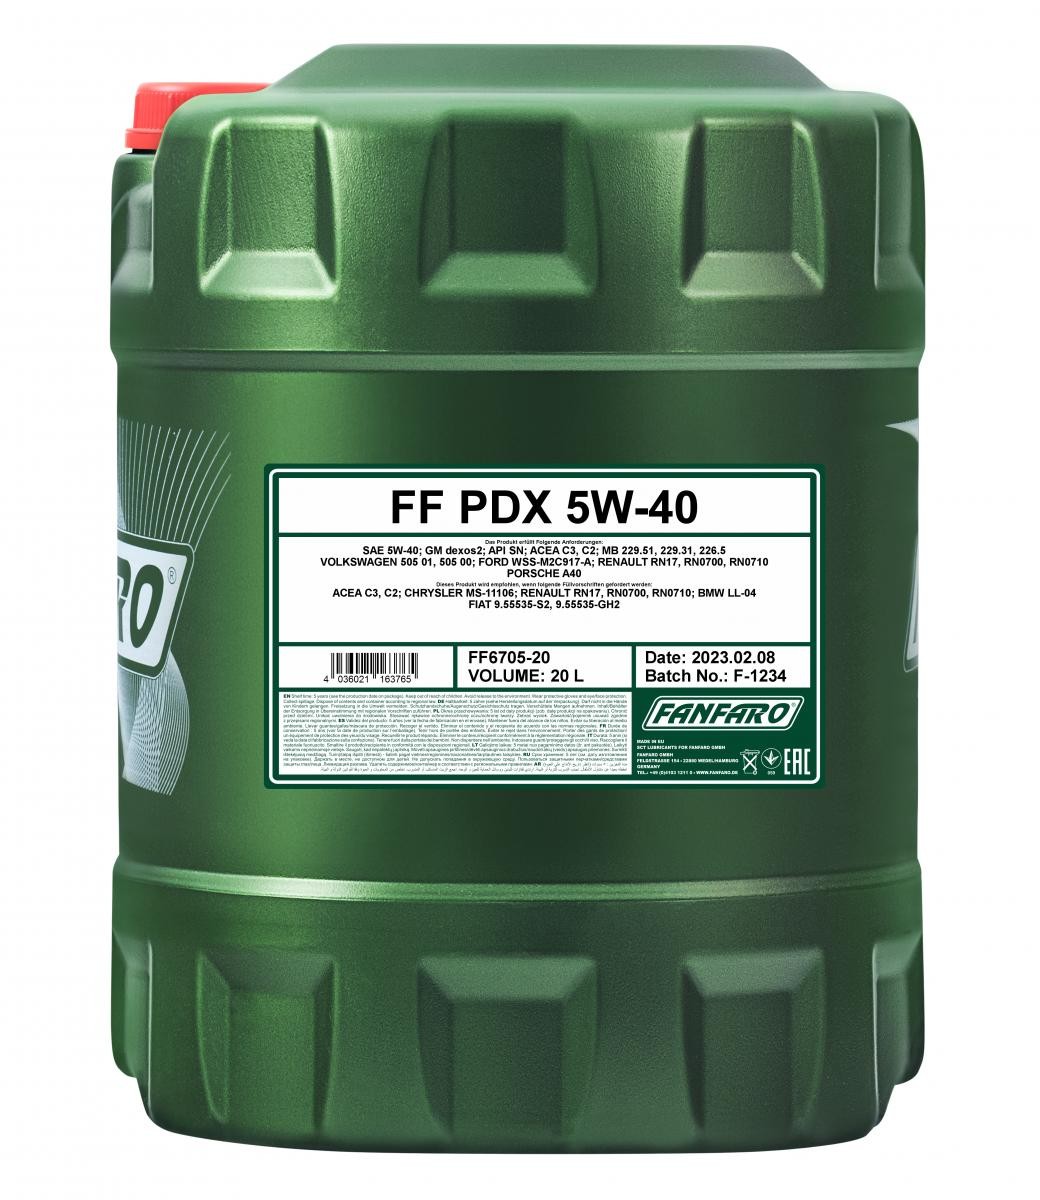 FANFARO Profi Line, PDX FF6705-20 Engine oil 5W-40, 20l, Synthetic Oil